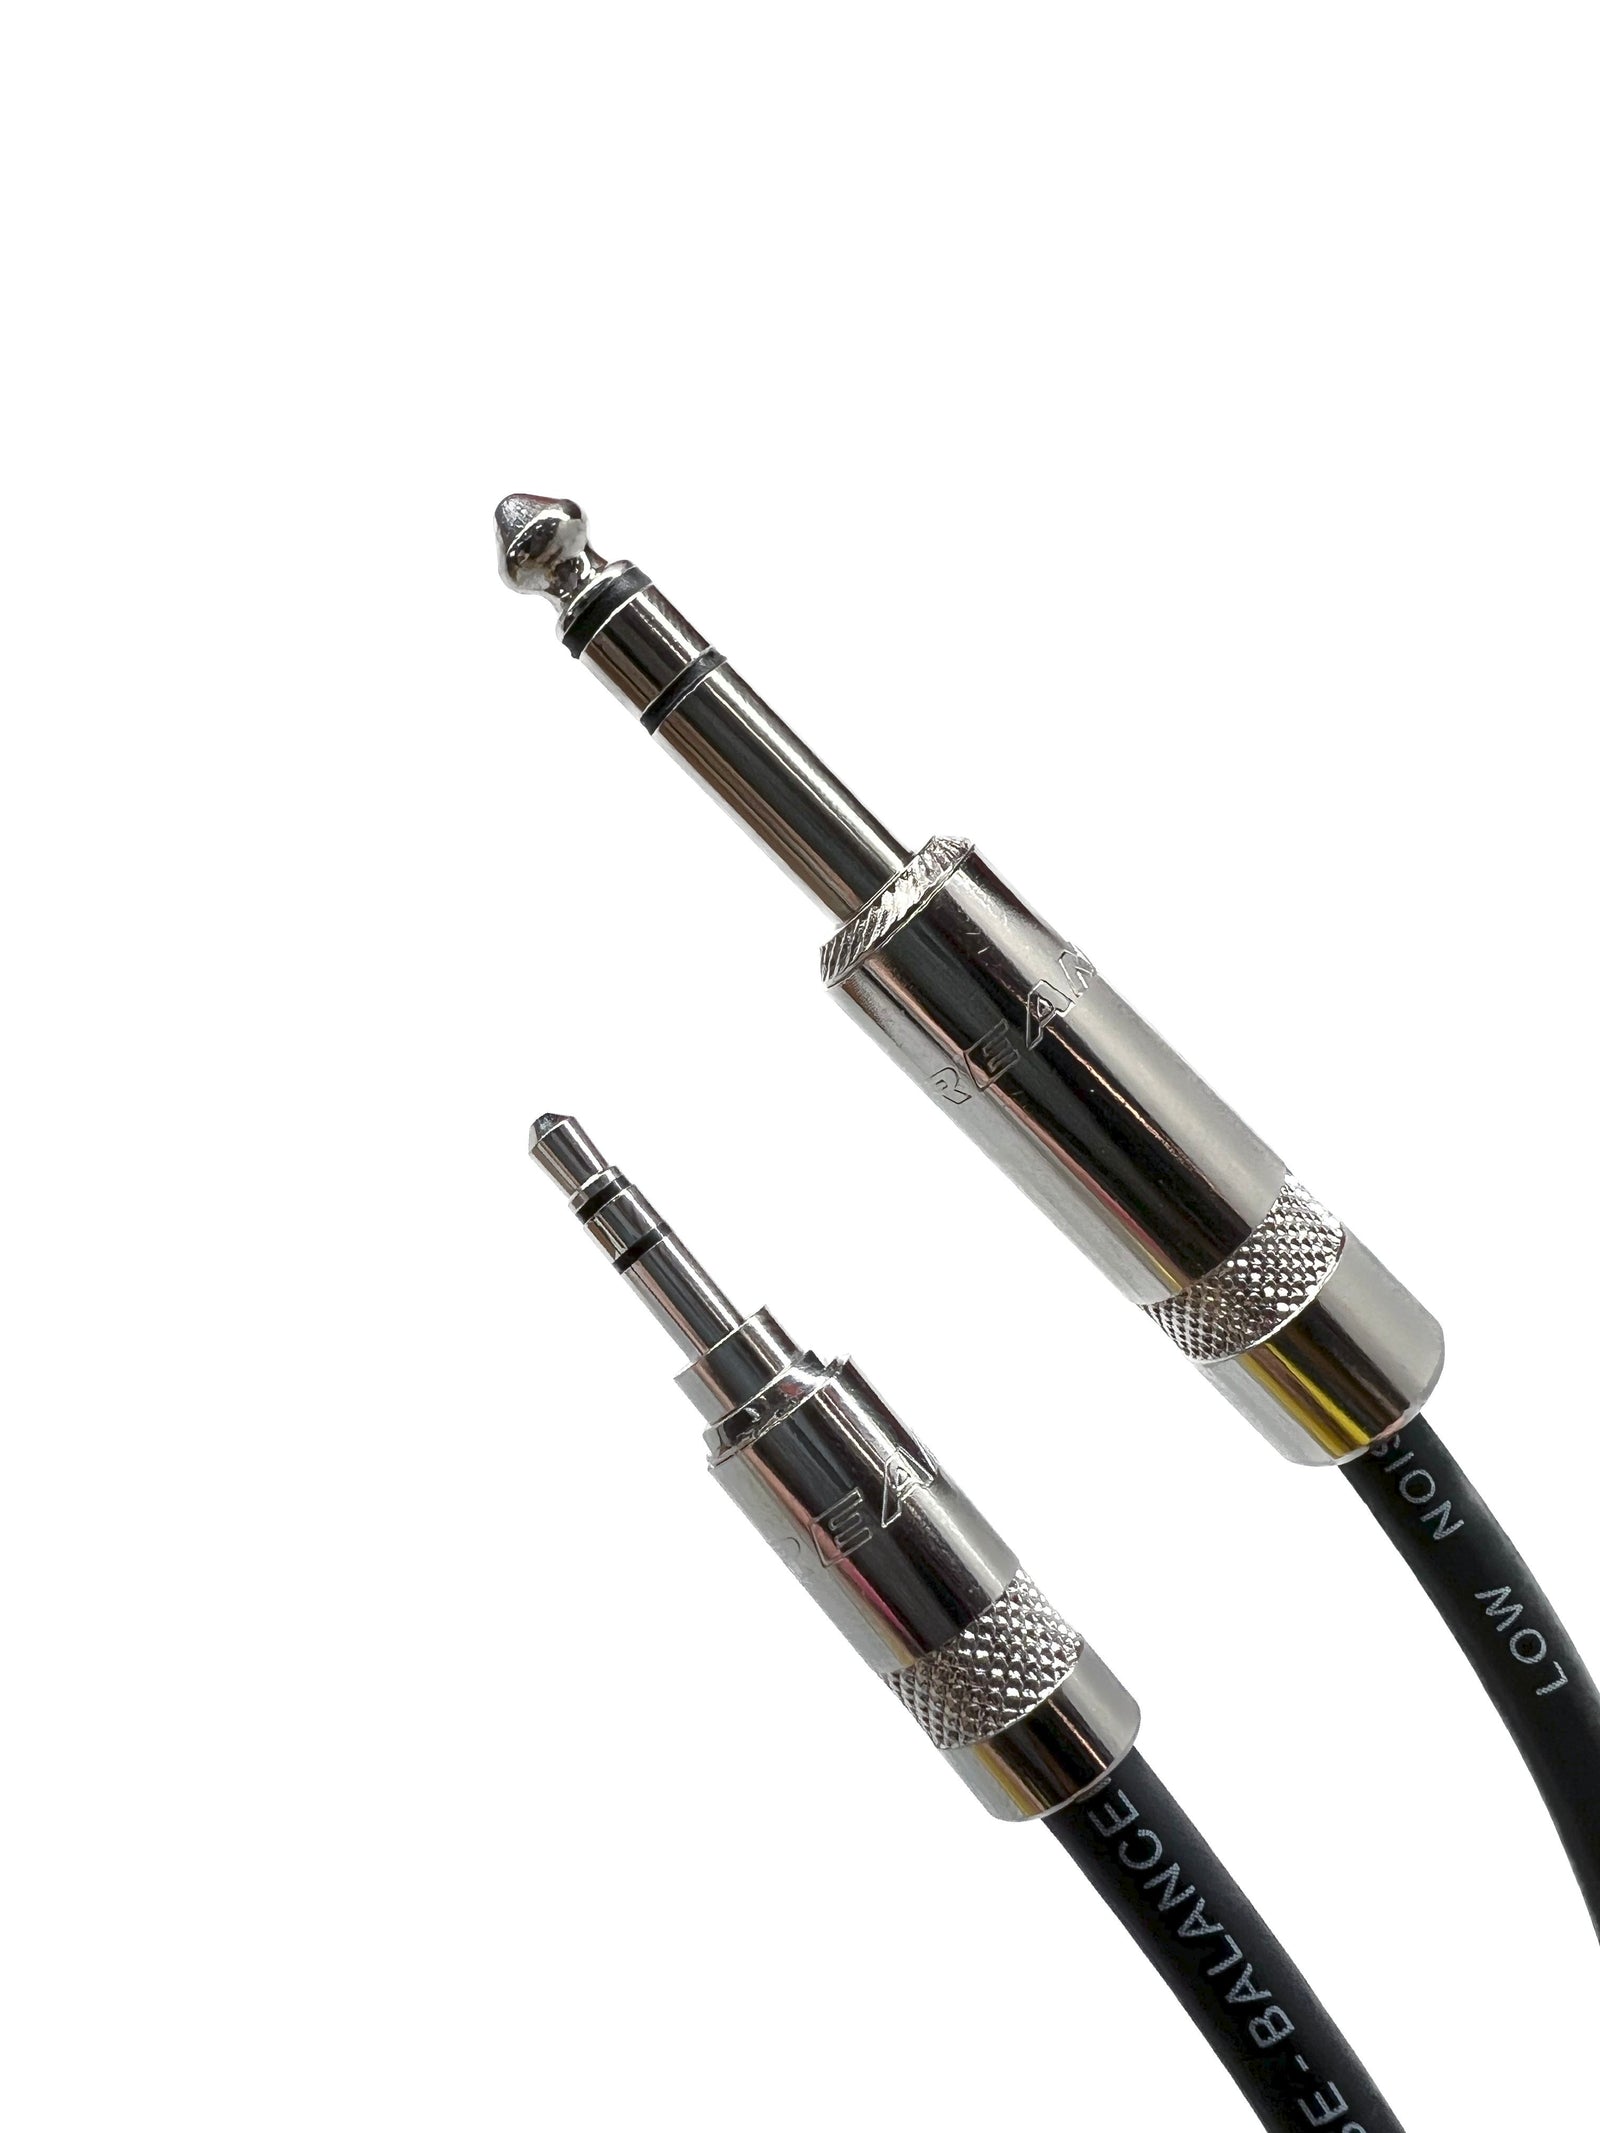 1/4 to XLR Cable, Nylon Braid Quarter inch TRS to XLR Male